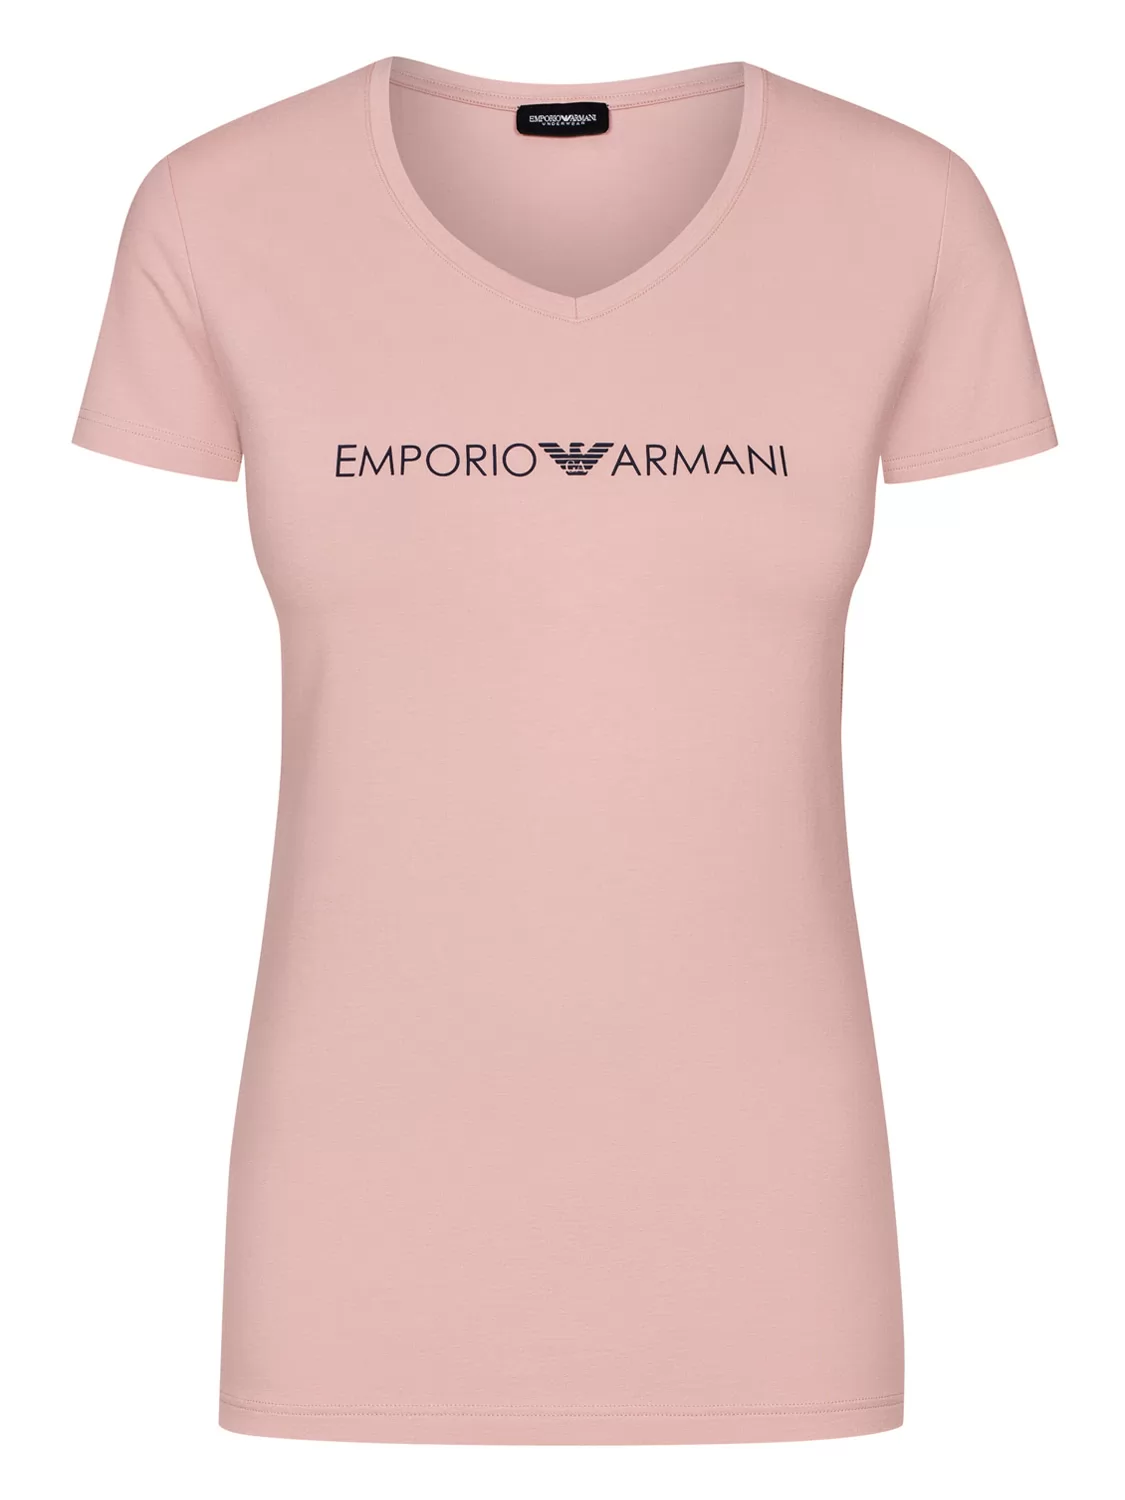  Koszulka damska Emporio Armani 1633219A317 - zdjęcie 1